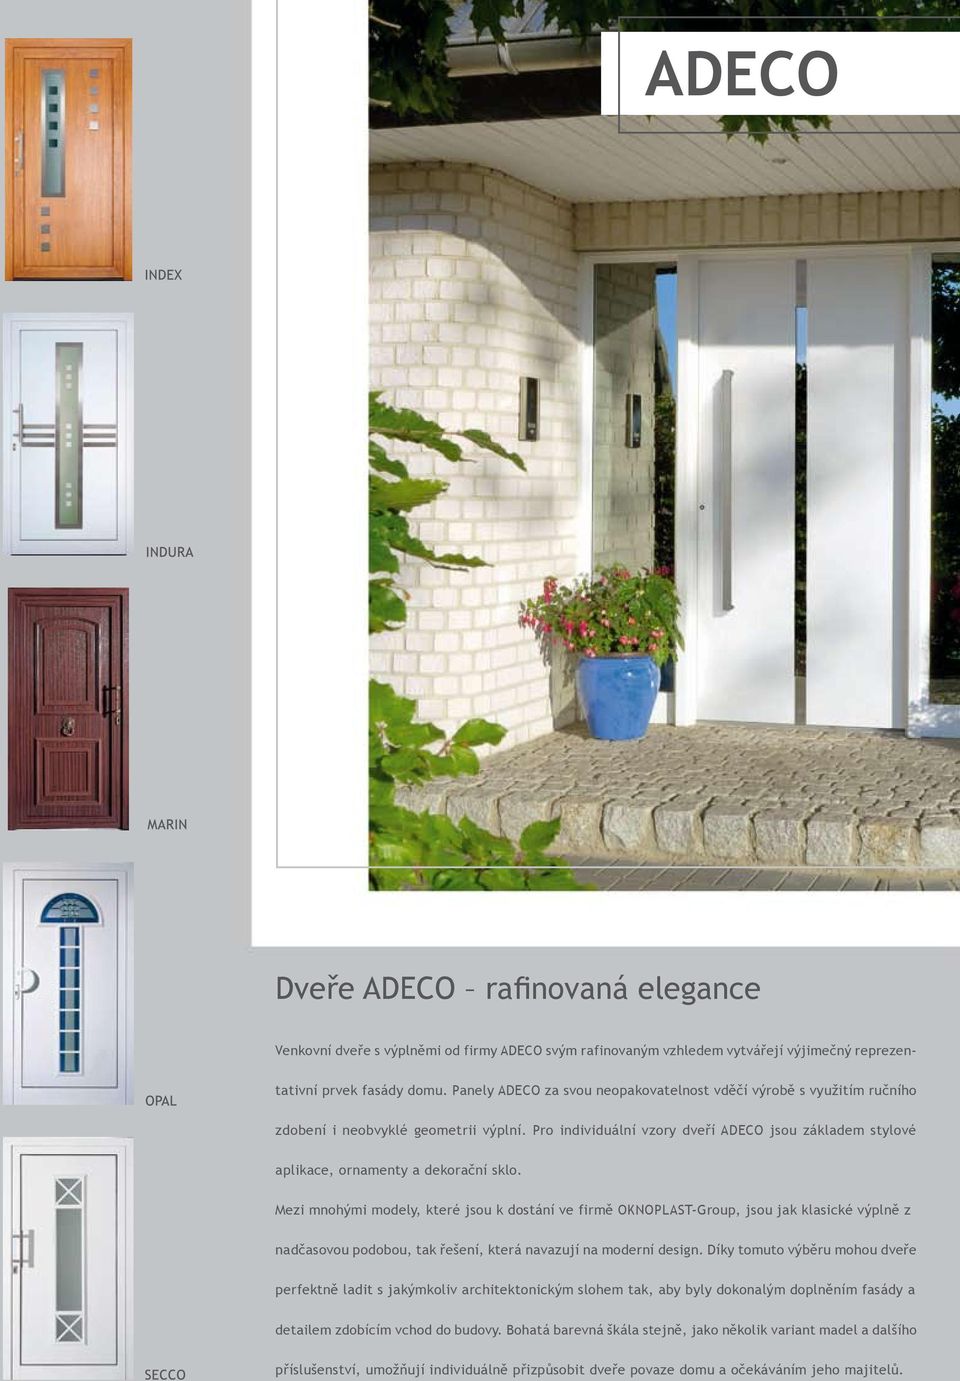 Pro individuální vzory dveří ADECO jsou základem stylové aplikace, ornamenty a dekorační sklo.